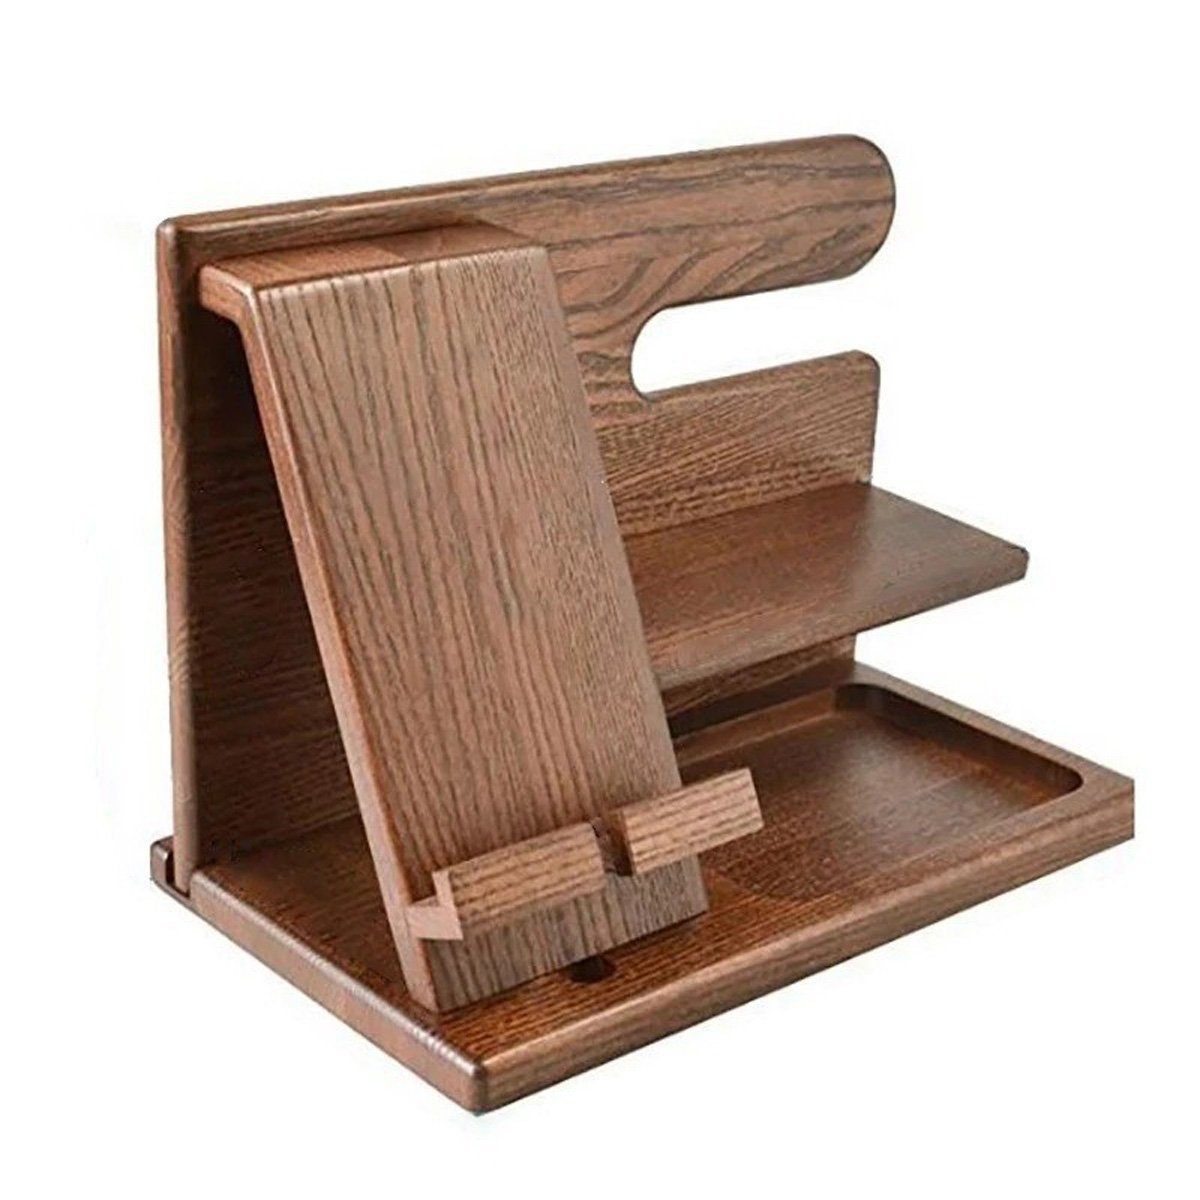 götäzer Media-Regal Holz-Desktop-Ladeständer für Mobiltelefone,Schmuck Aufbewahrungsregal, Handgefertigter Schreibtisch-Organizer aus hochwertigem Eschenholz